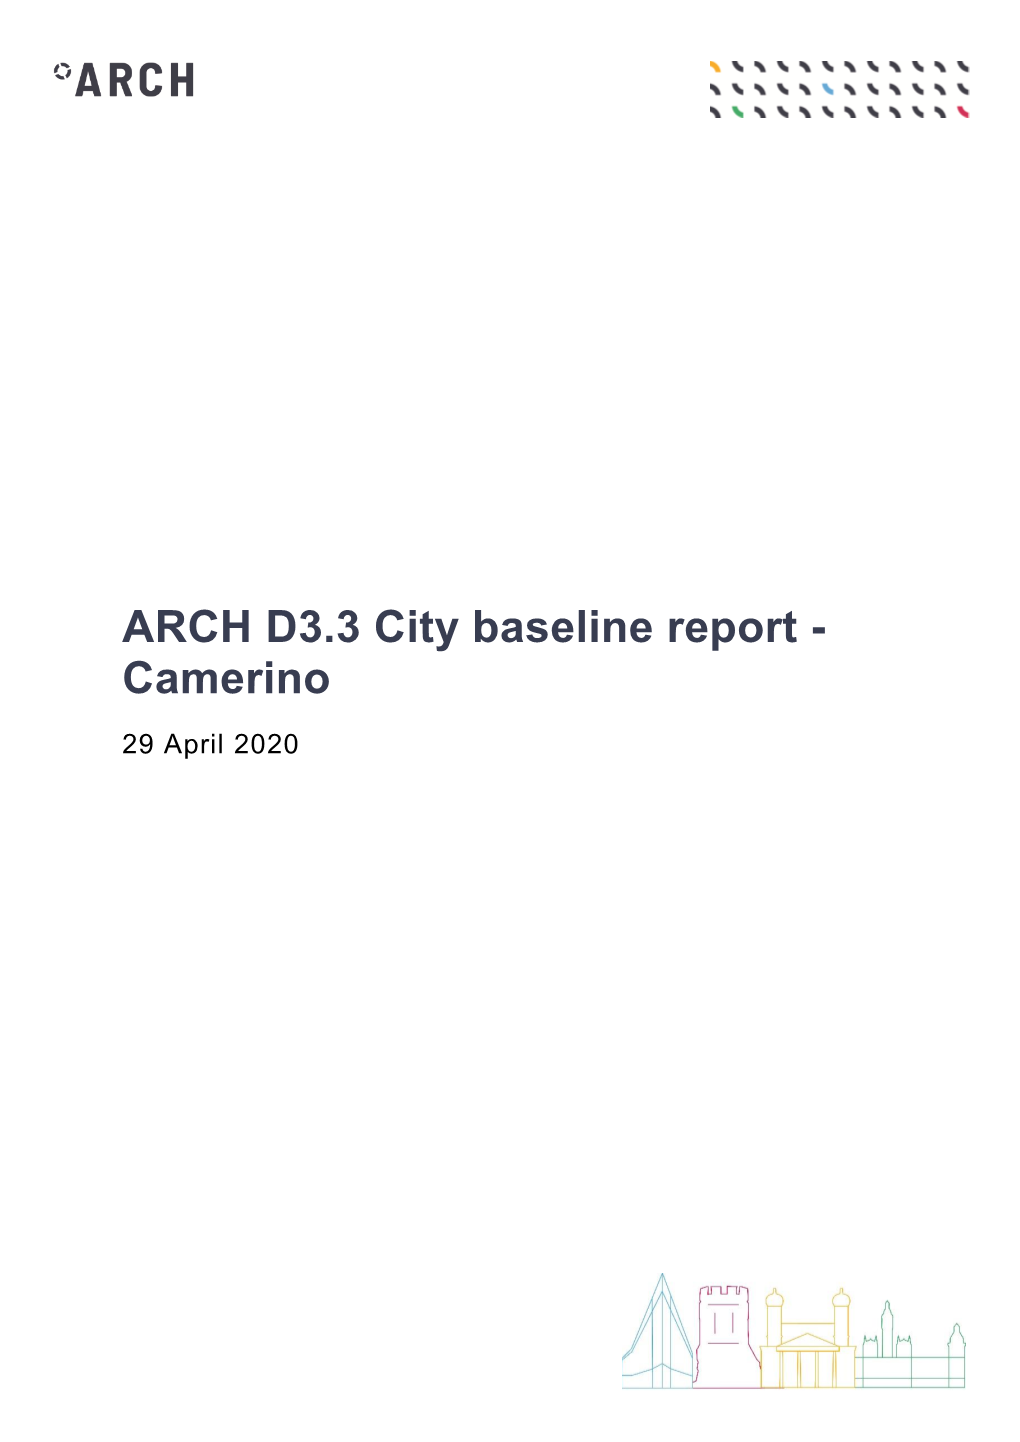 ARCH D3.3 City Baseline Report